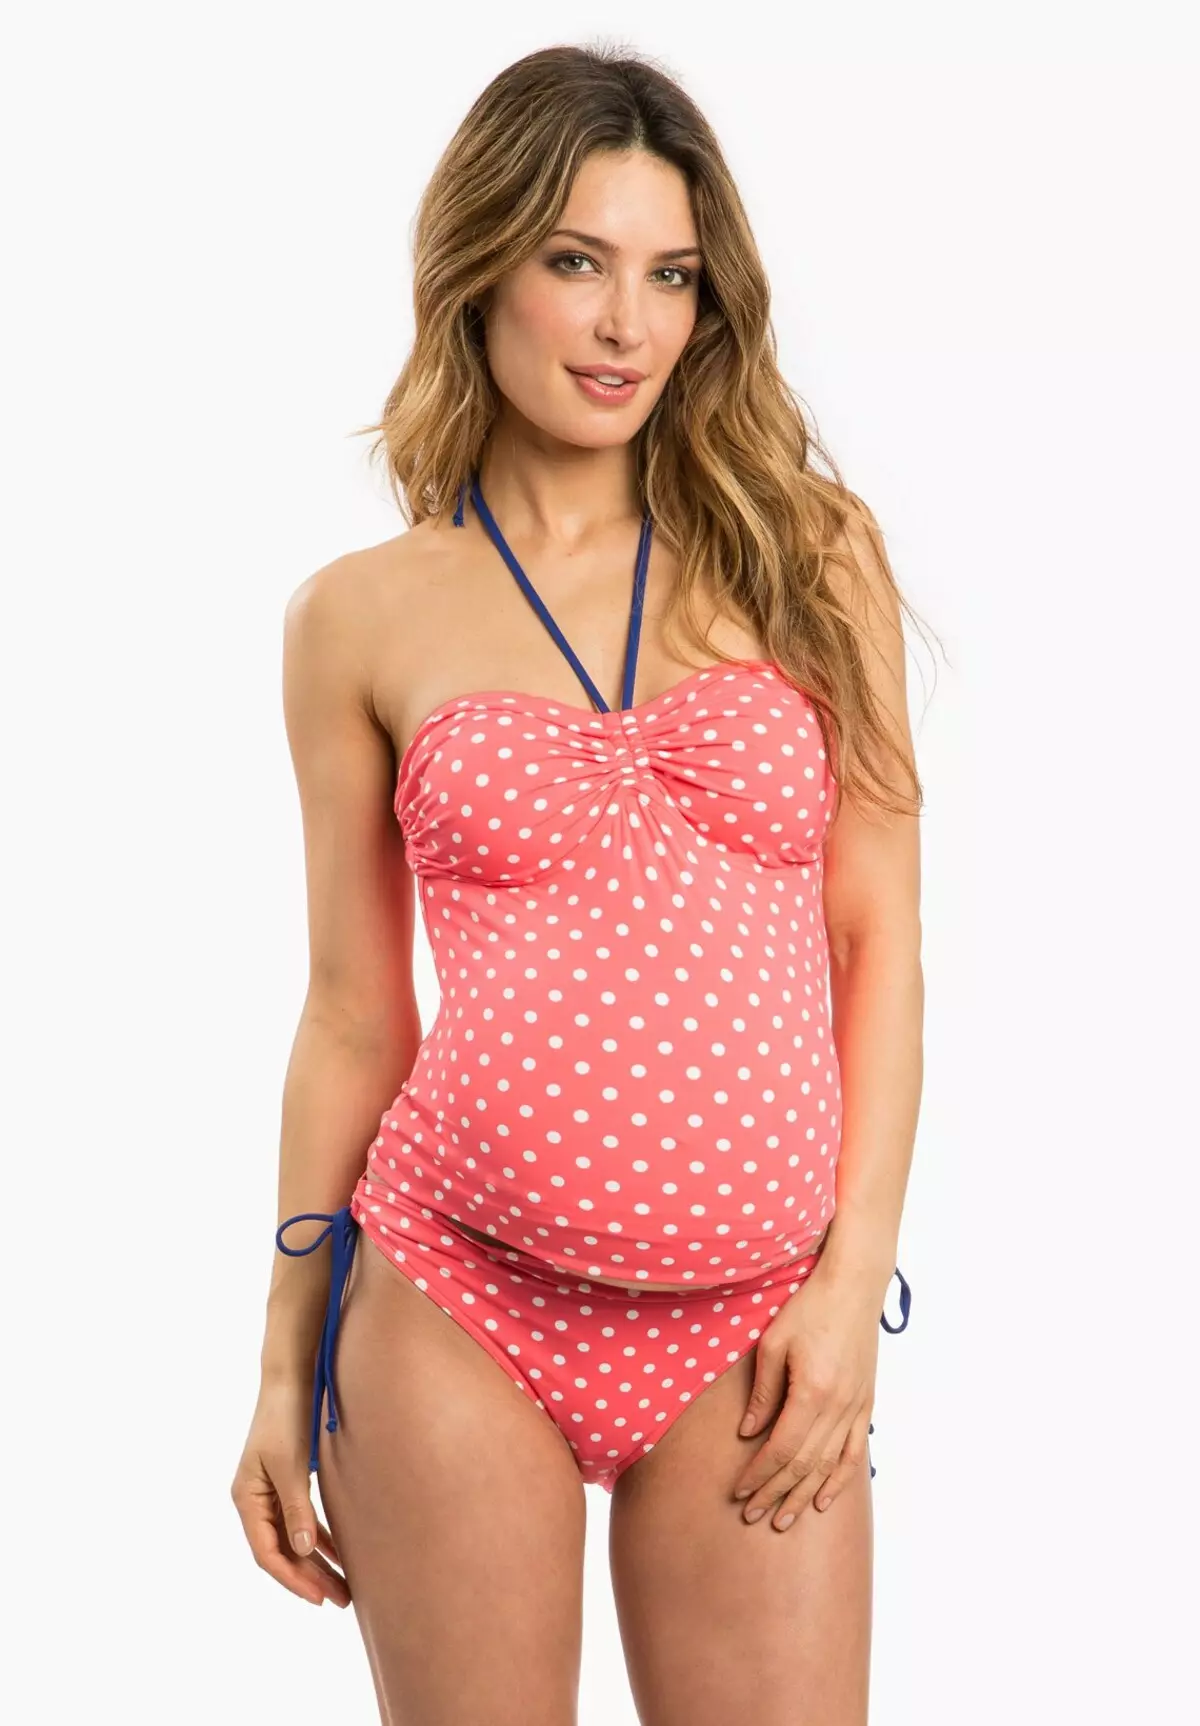 गर्भवती महिलाओं के लिए स्विमवीयर (78 फोटो): पूल के लिए मॉडल, टैंकिनी, फ्यूजन स्पोर्ट्स 13456_56